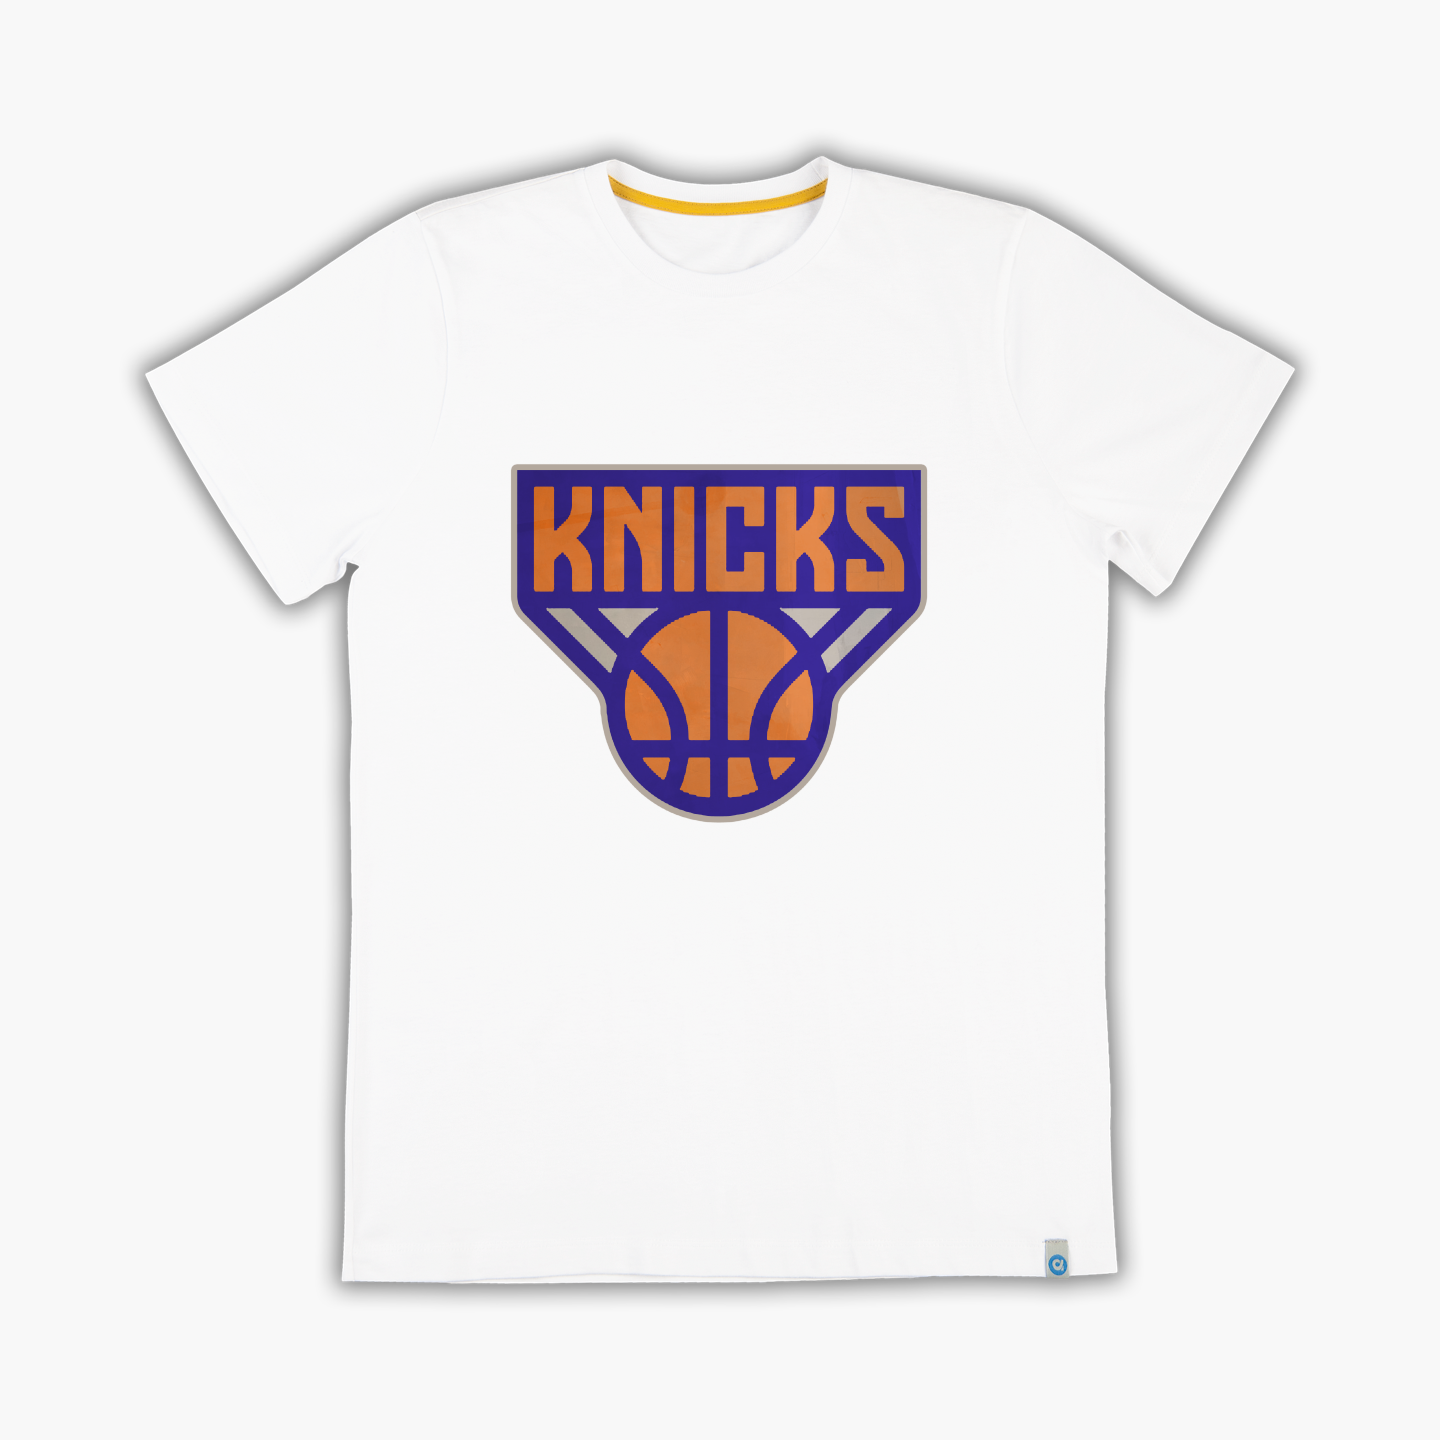 Knicks New - Tişört